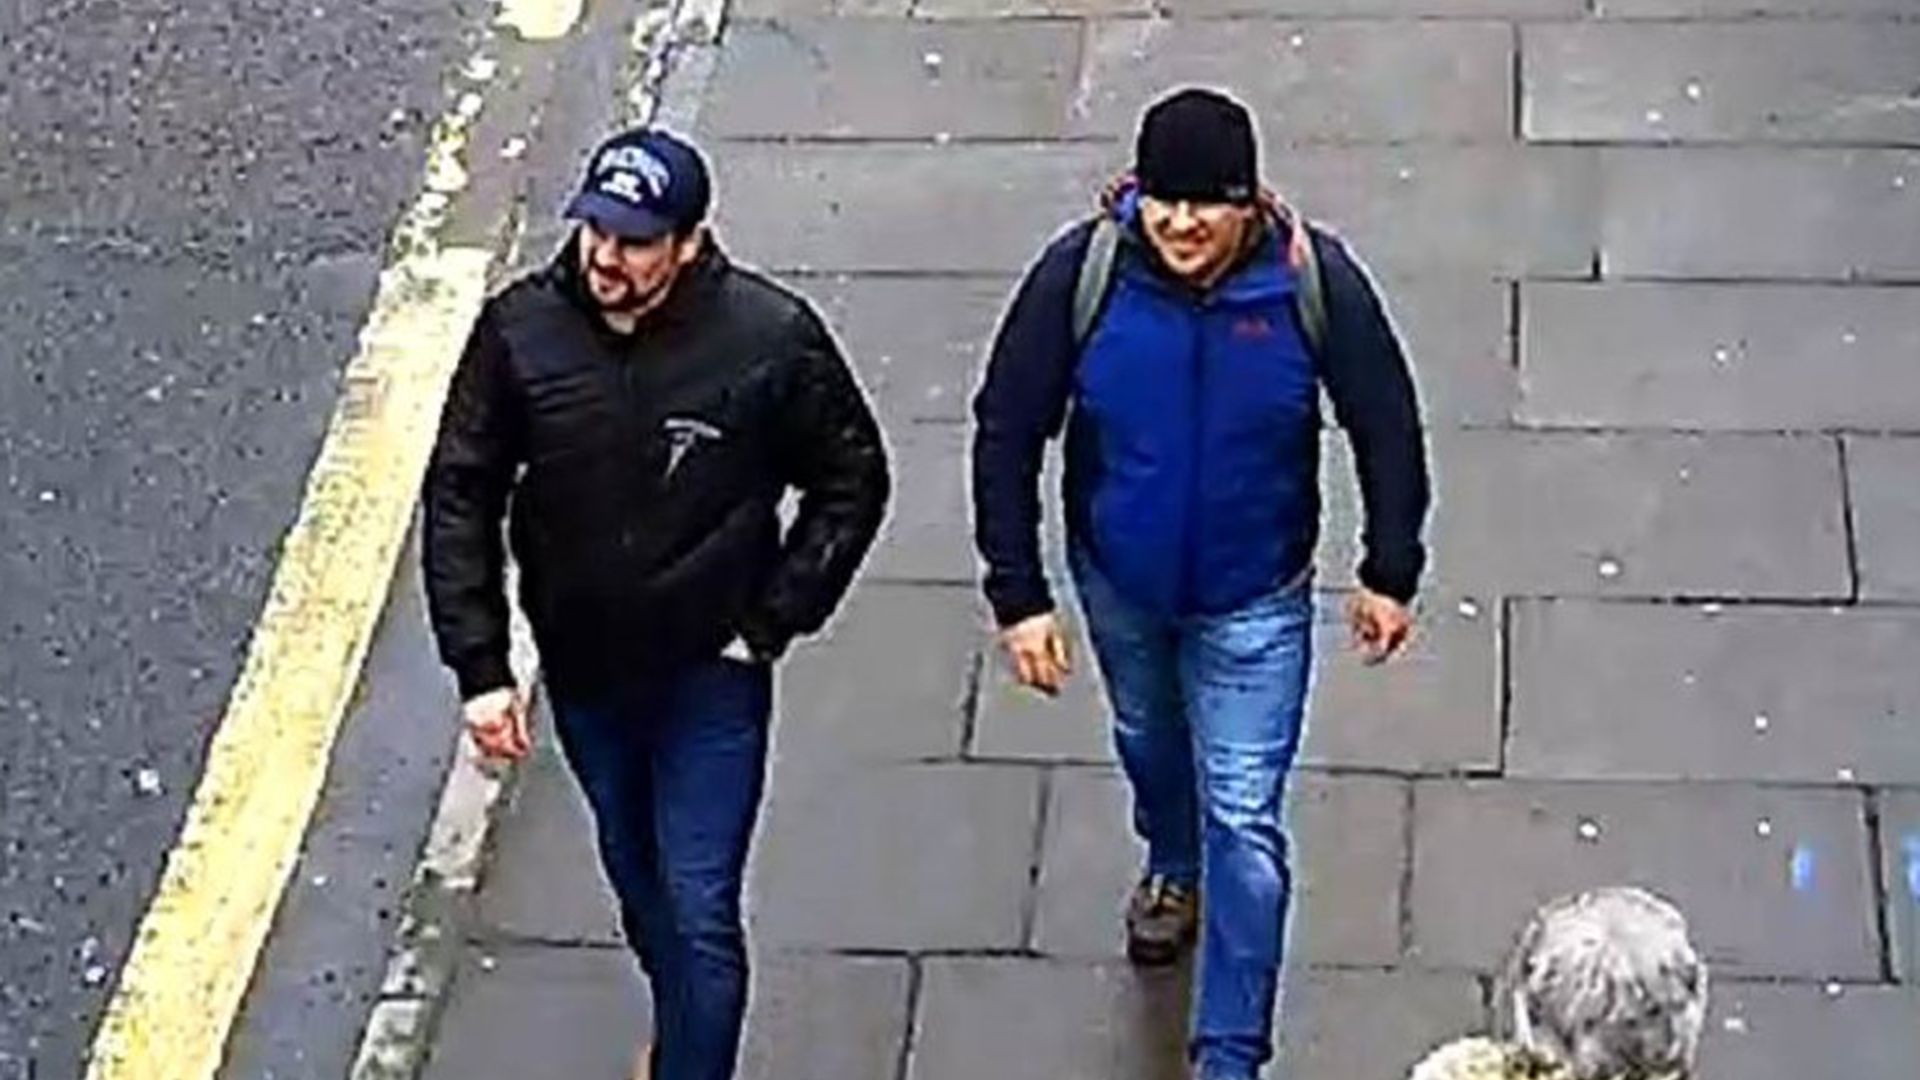 Novichok poisoning suspects on CCTV